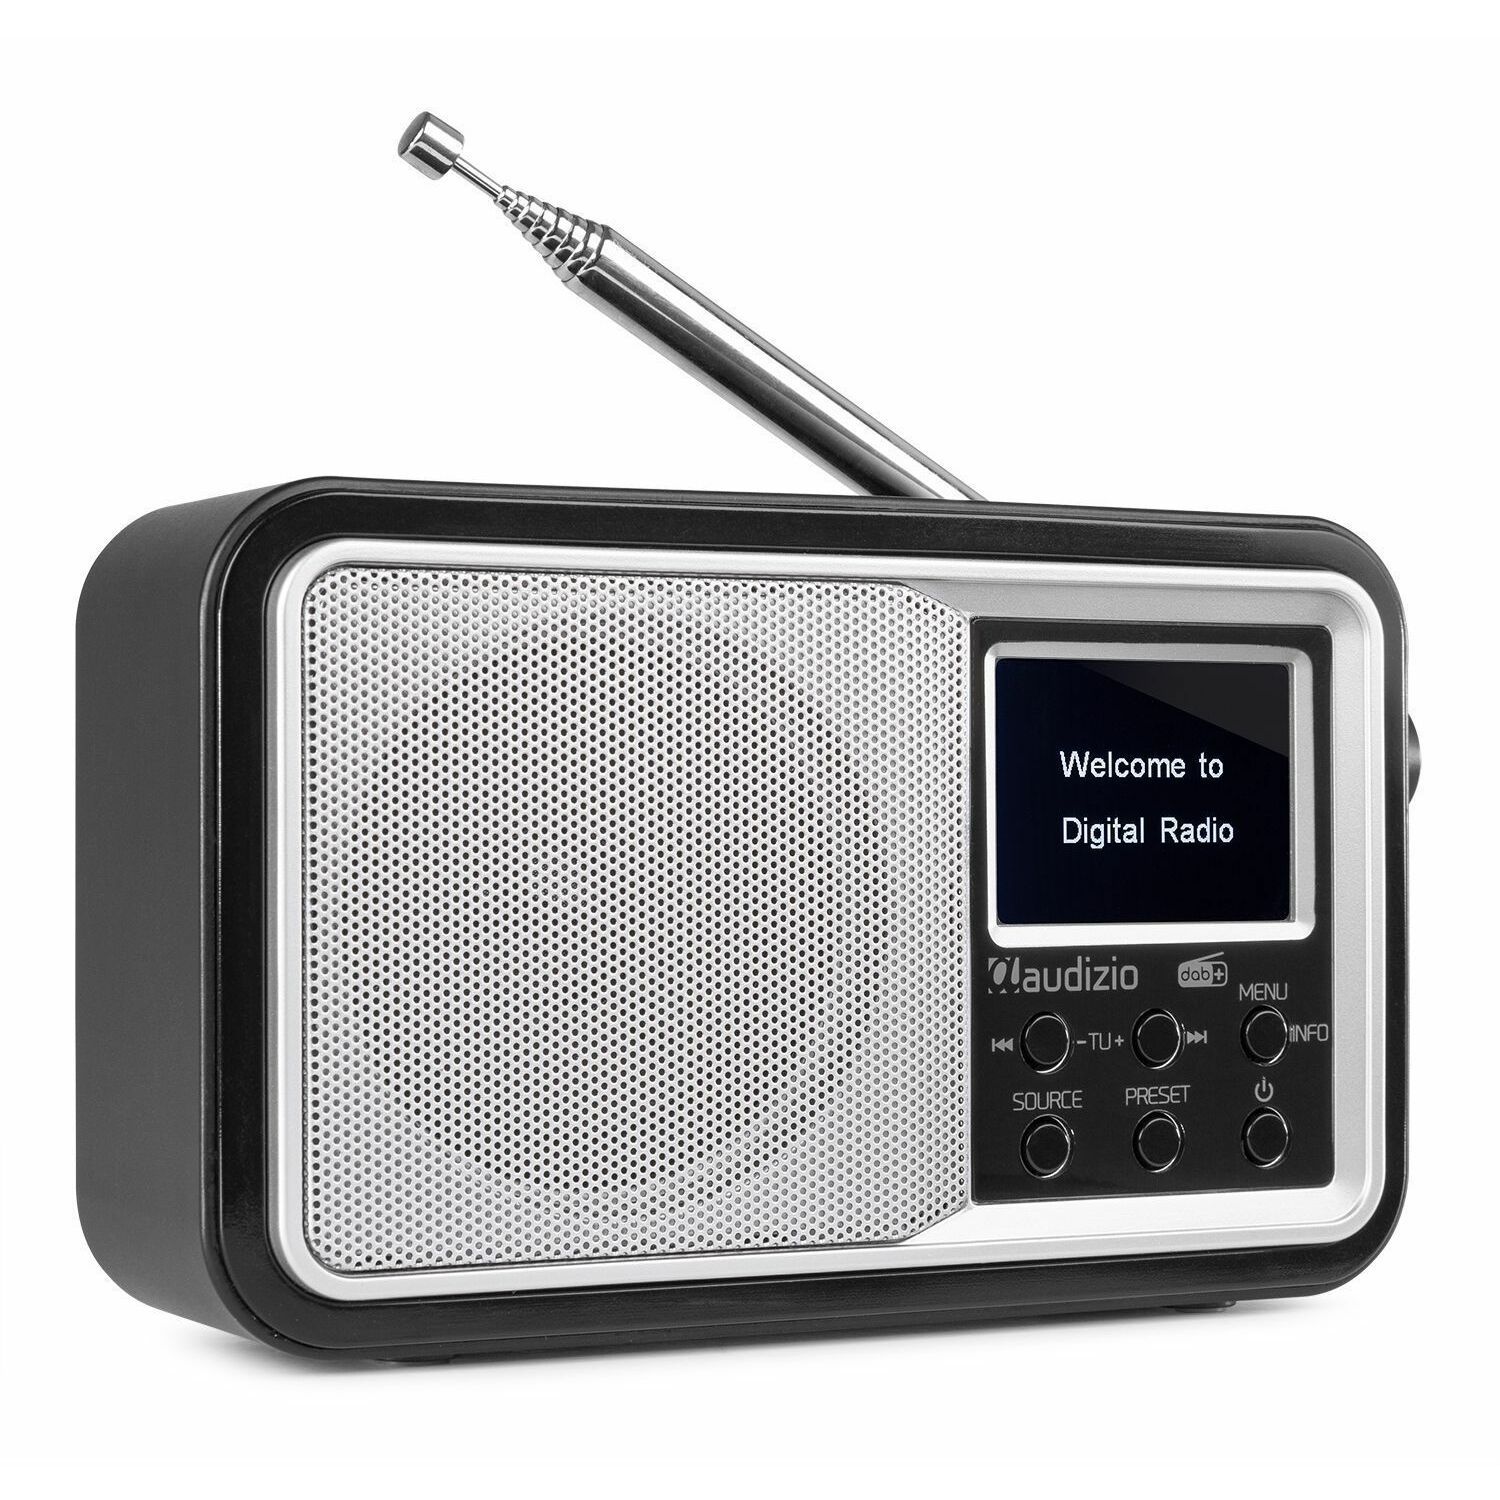 Bezienswaardigheden bekijken Hoop van Bliksem Audizio Parma draagbare DAB radio met Bluetooth en FM radio - Zilver kopen?